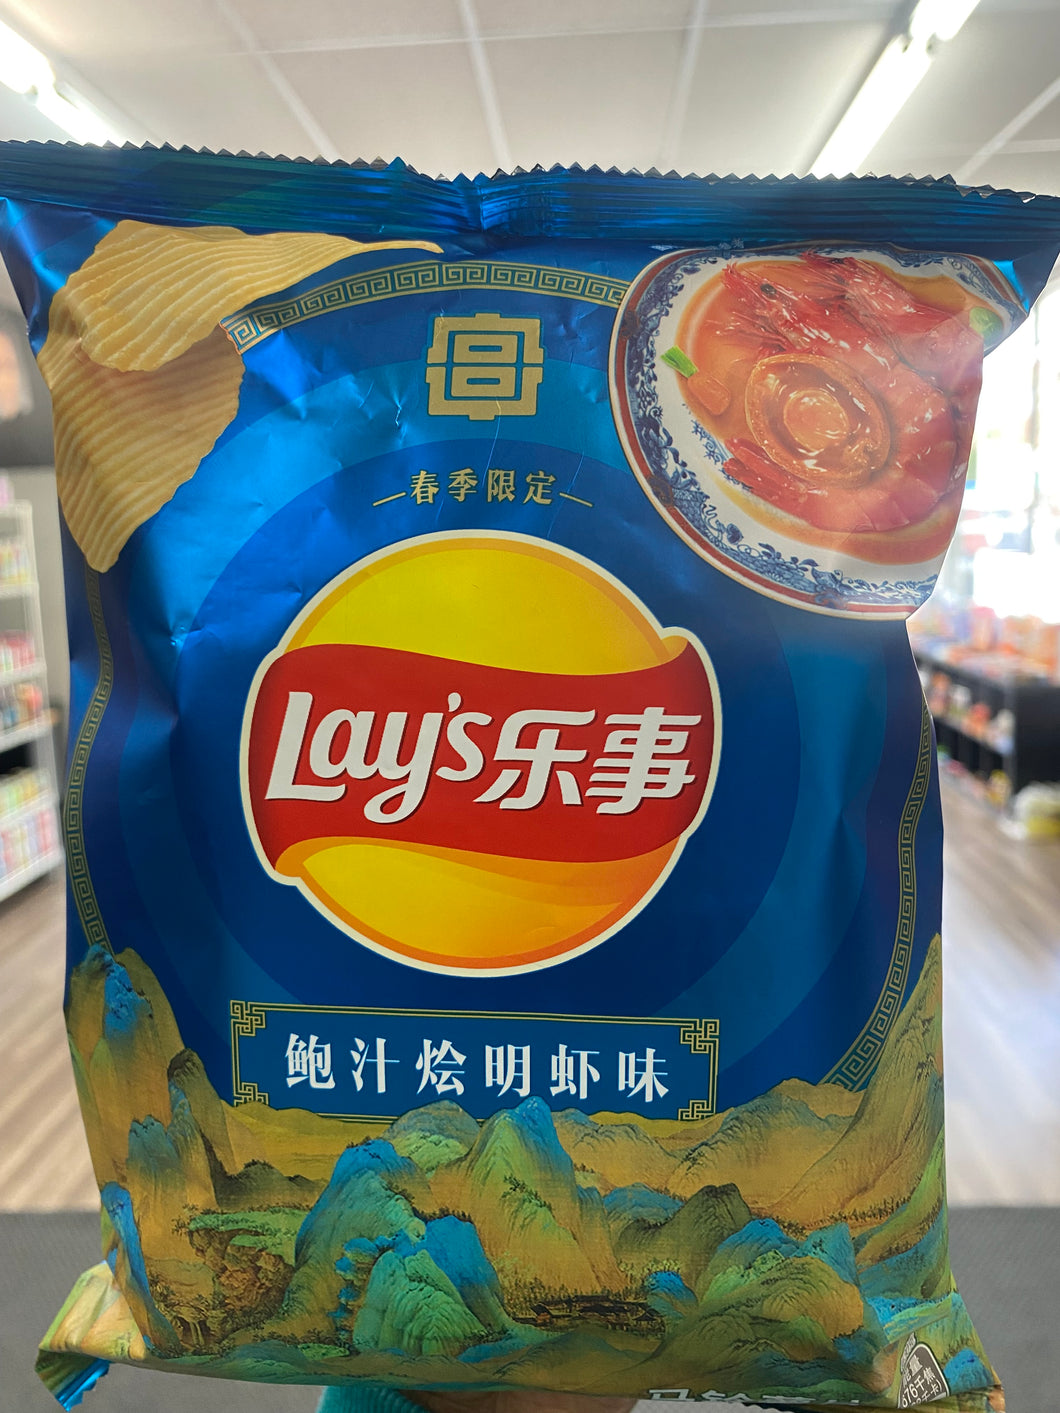 Lay’s Braised Prawns chips (China)